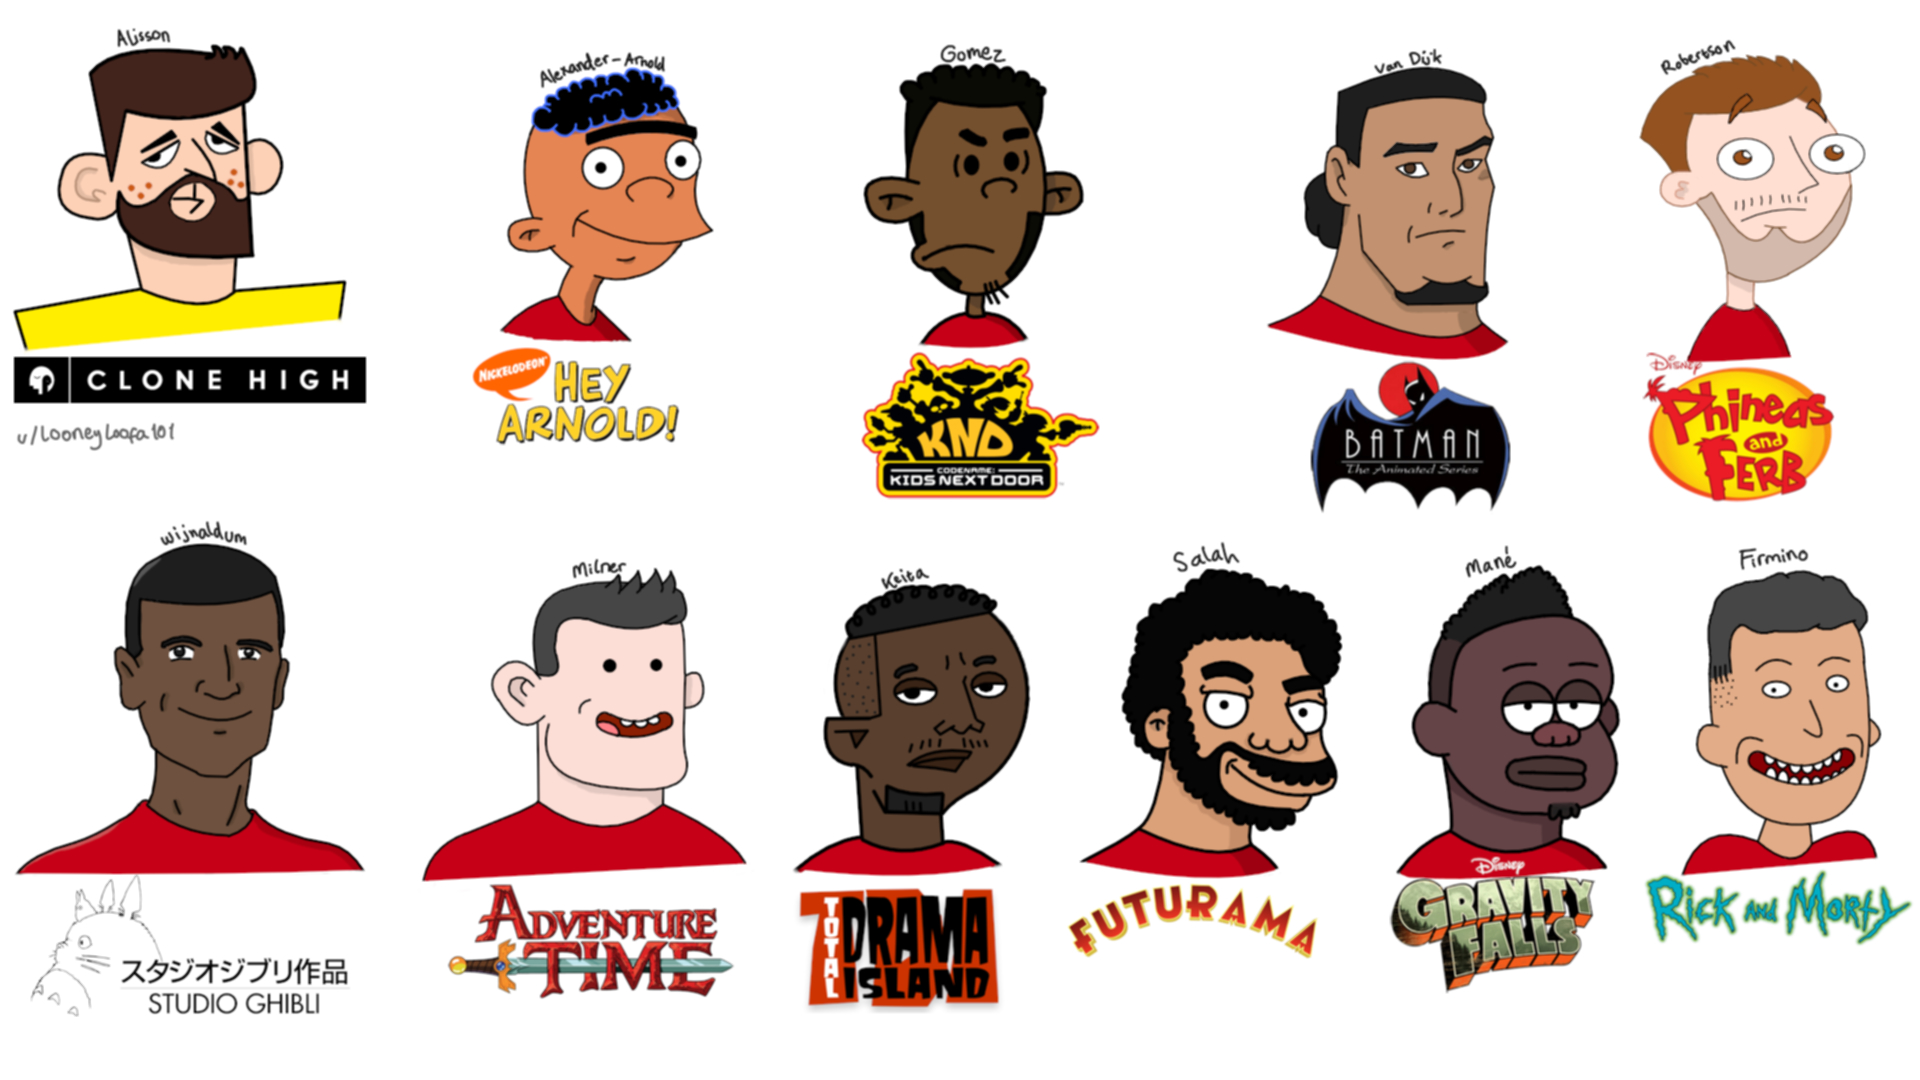 Artwork depicting Liverpool footballers as cartoons in varying styles